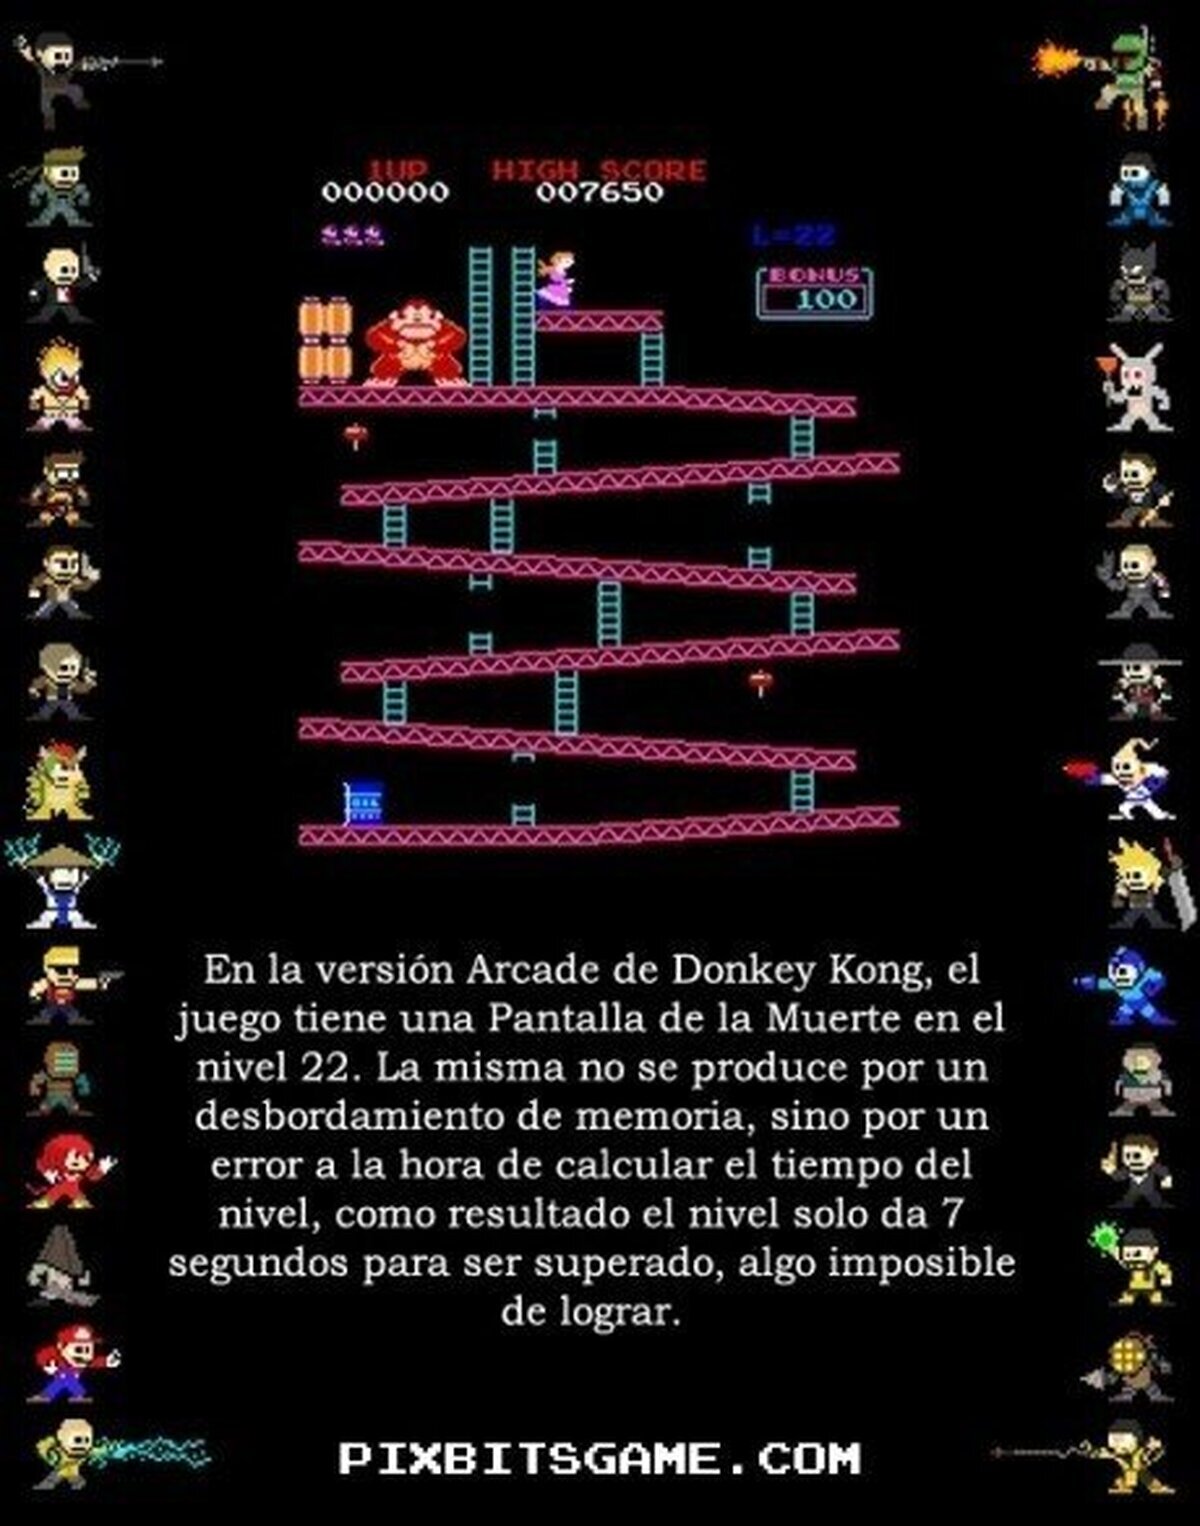 PANTALLA DE LA MUERTE - También presente en el Arcade de Donkey Kong, al nivel 22